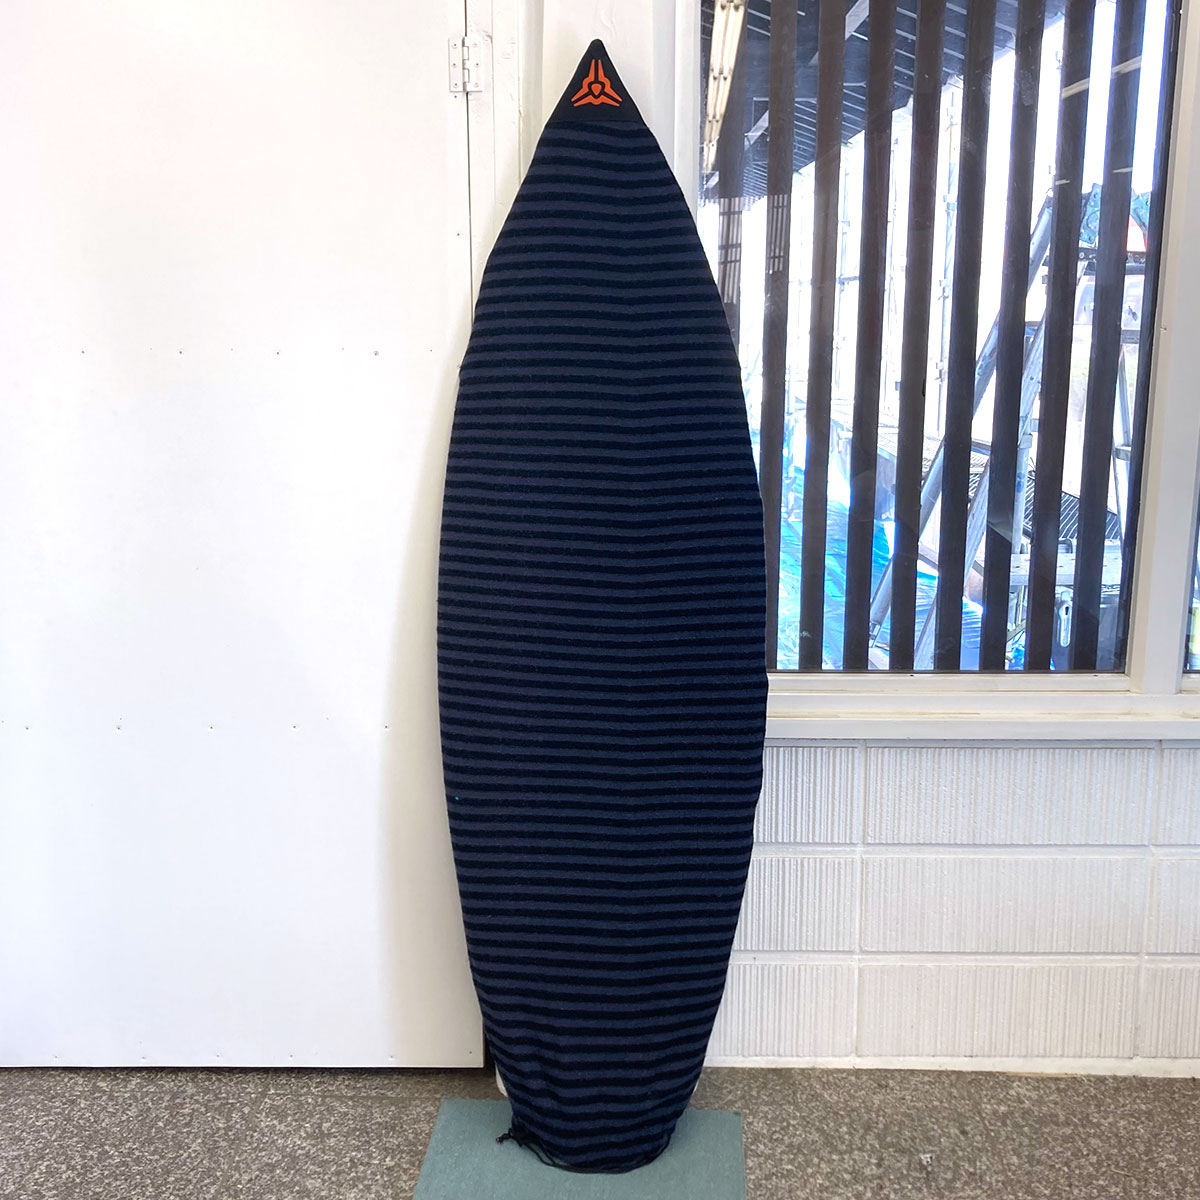 中古ボード サーフボード サーフィン USED SURFBOARD 【used285】DARCY Surfboards ダーシー サーフボード 5'9  x 20' 1/4 x 2' 3/8